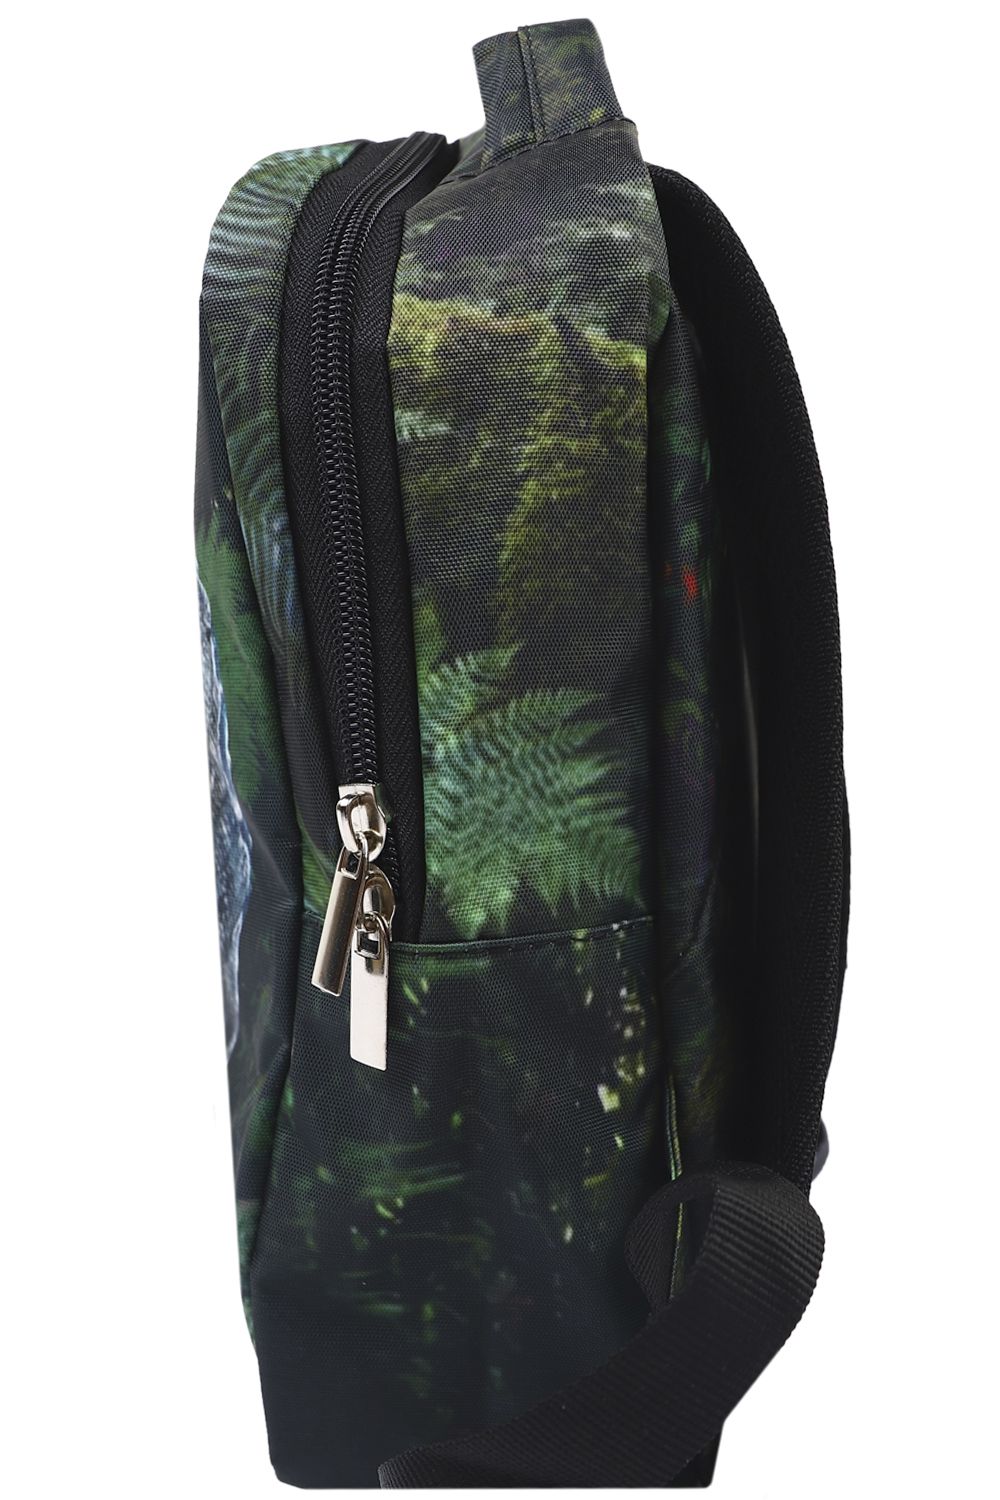 Рюкзак BagRio, размер UNI, цвет зеленый BR1-002/20-mini - фото 2